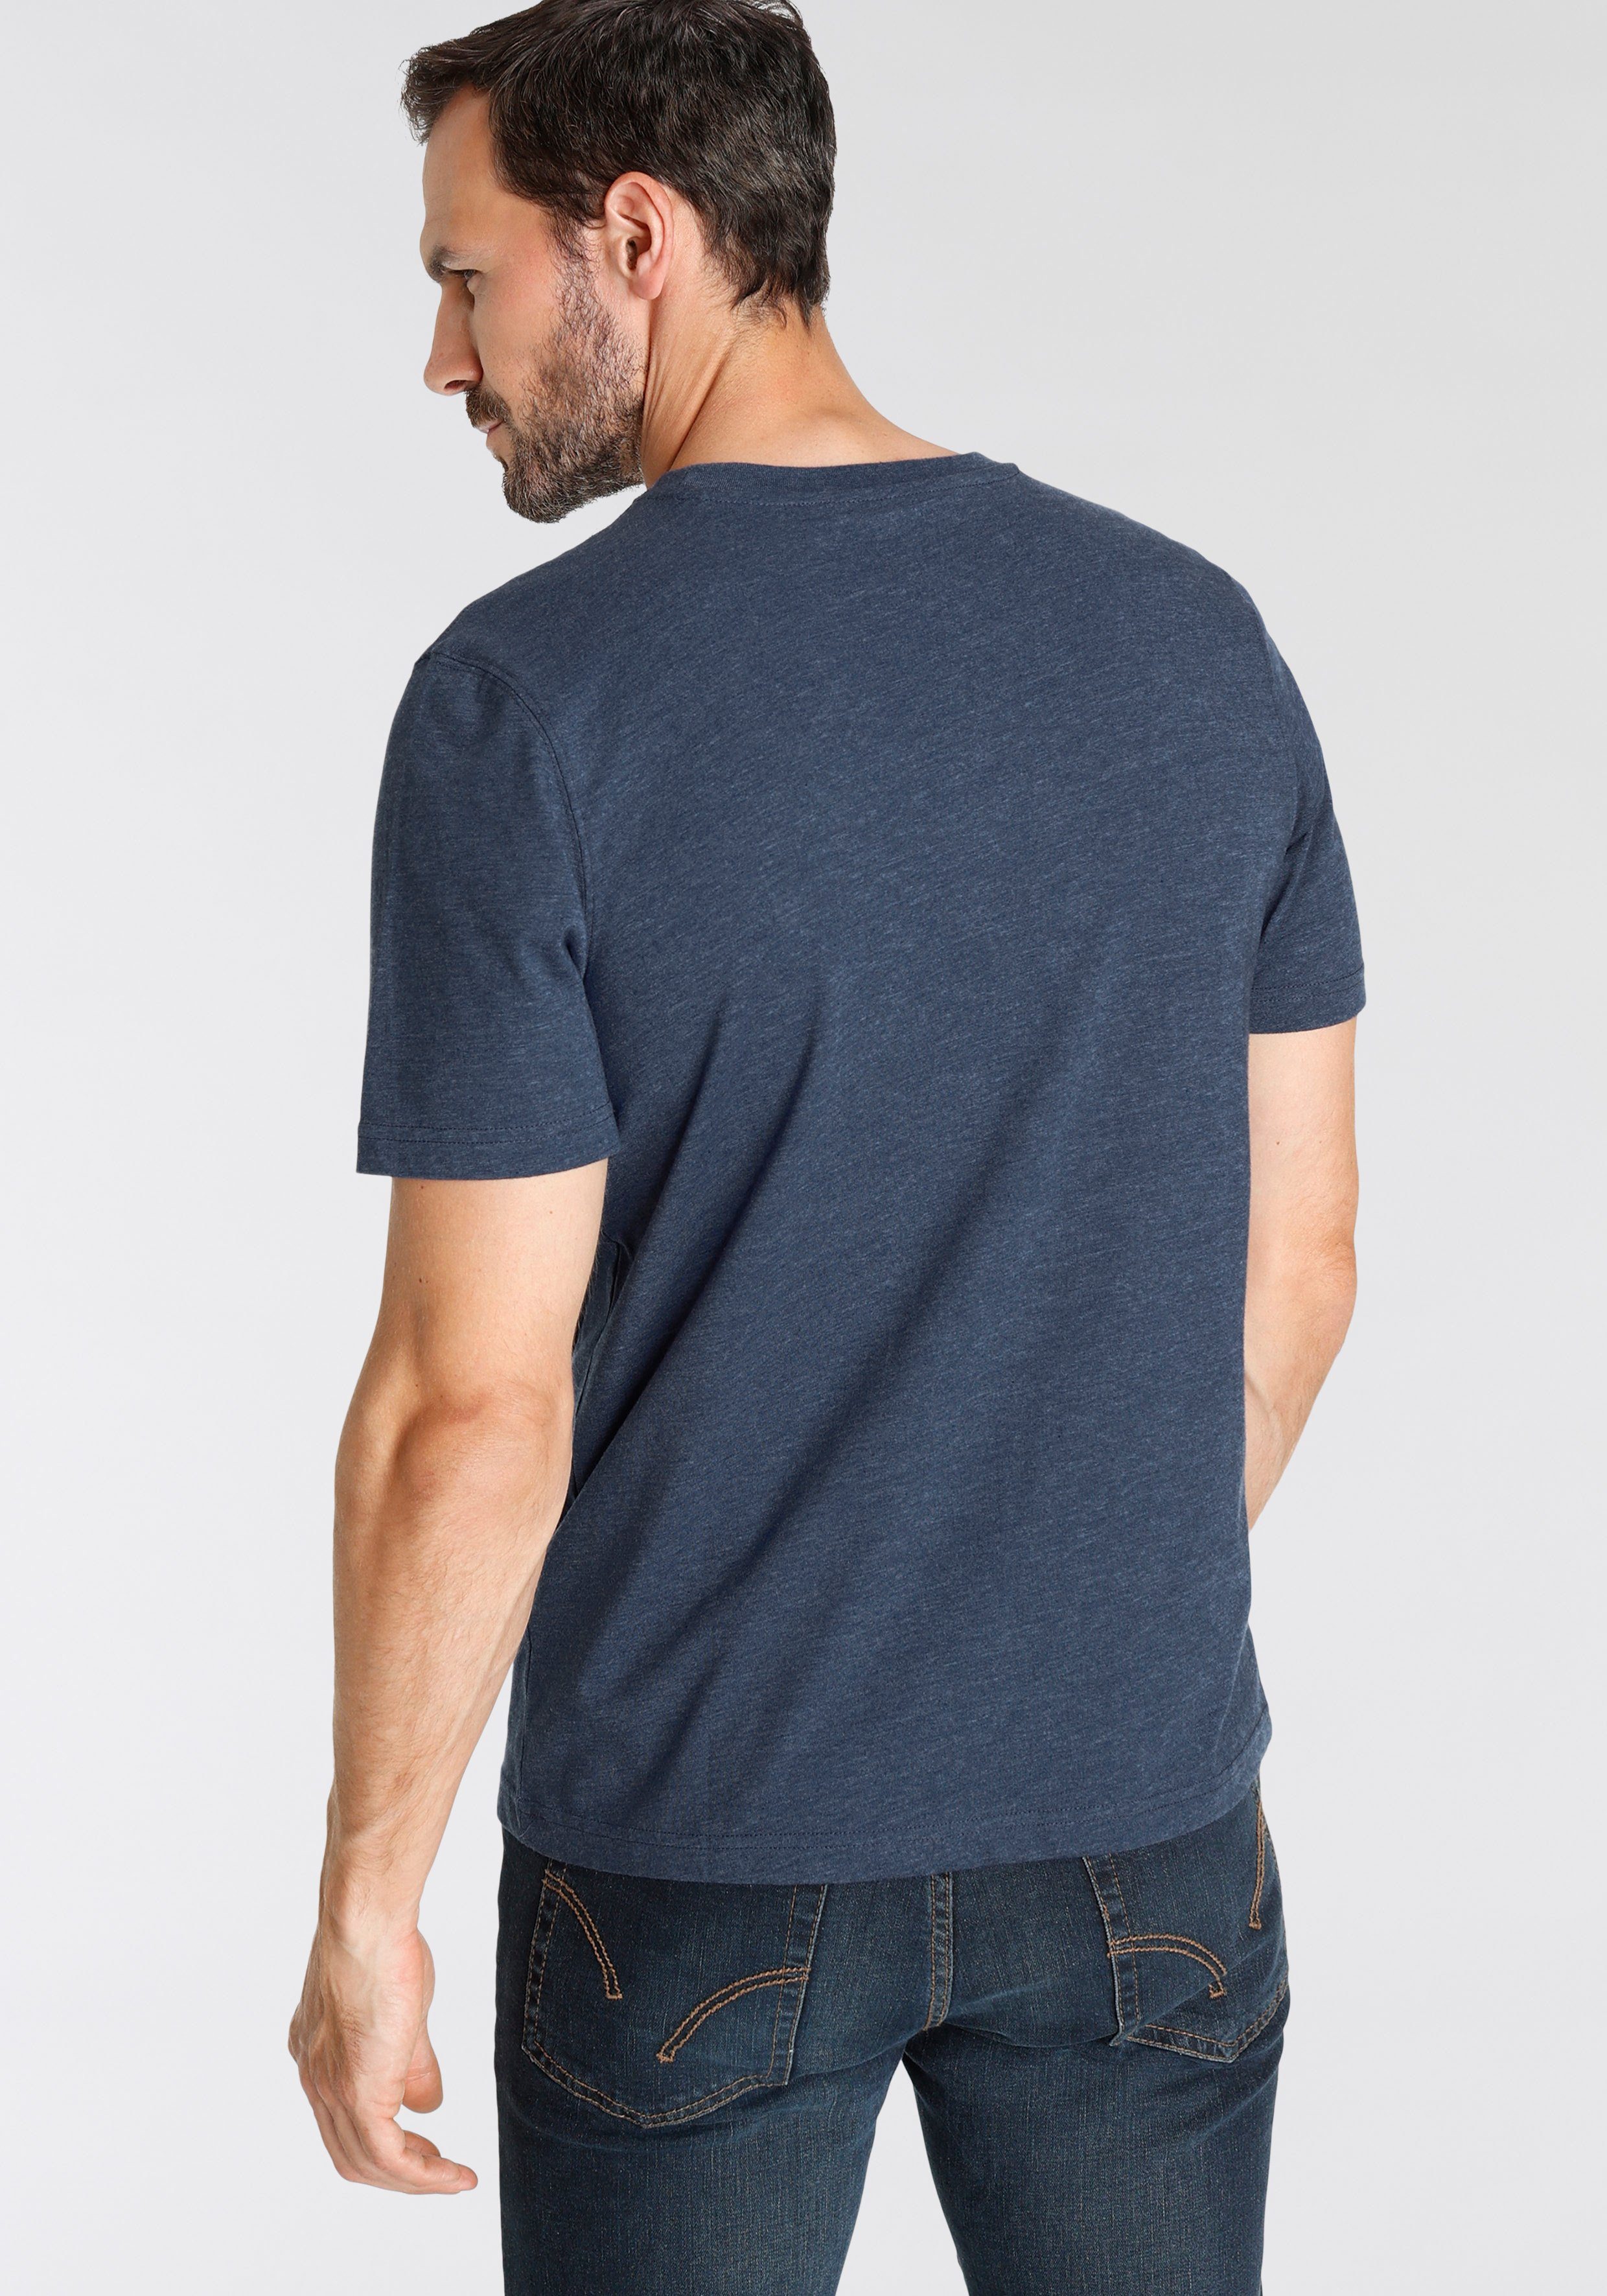 T-shirt auch Unterzieh 2-tlg., Man's 2er-Pack) T-Shirt World (Packung, perfekt als